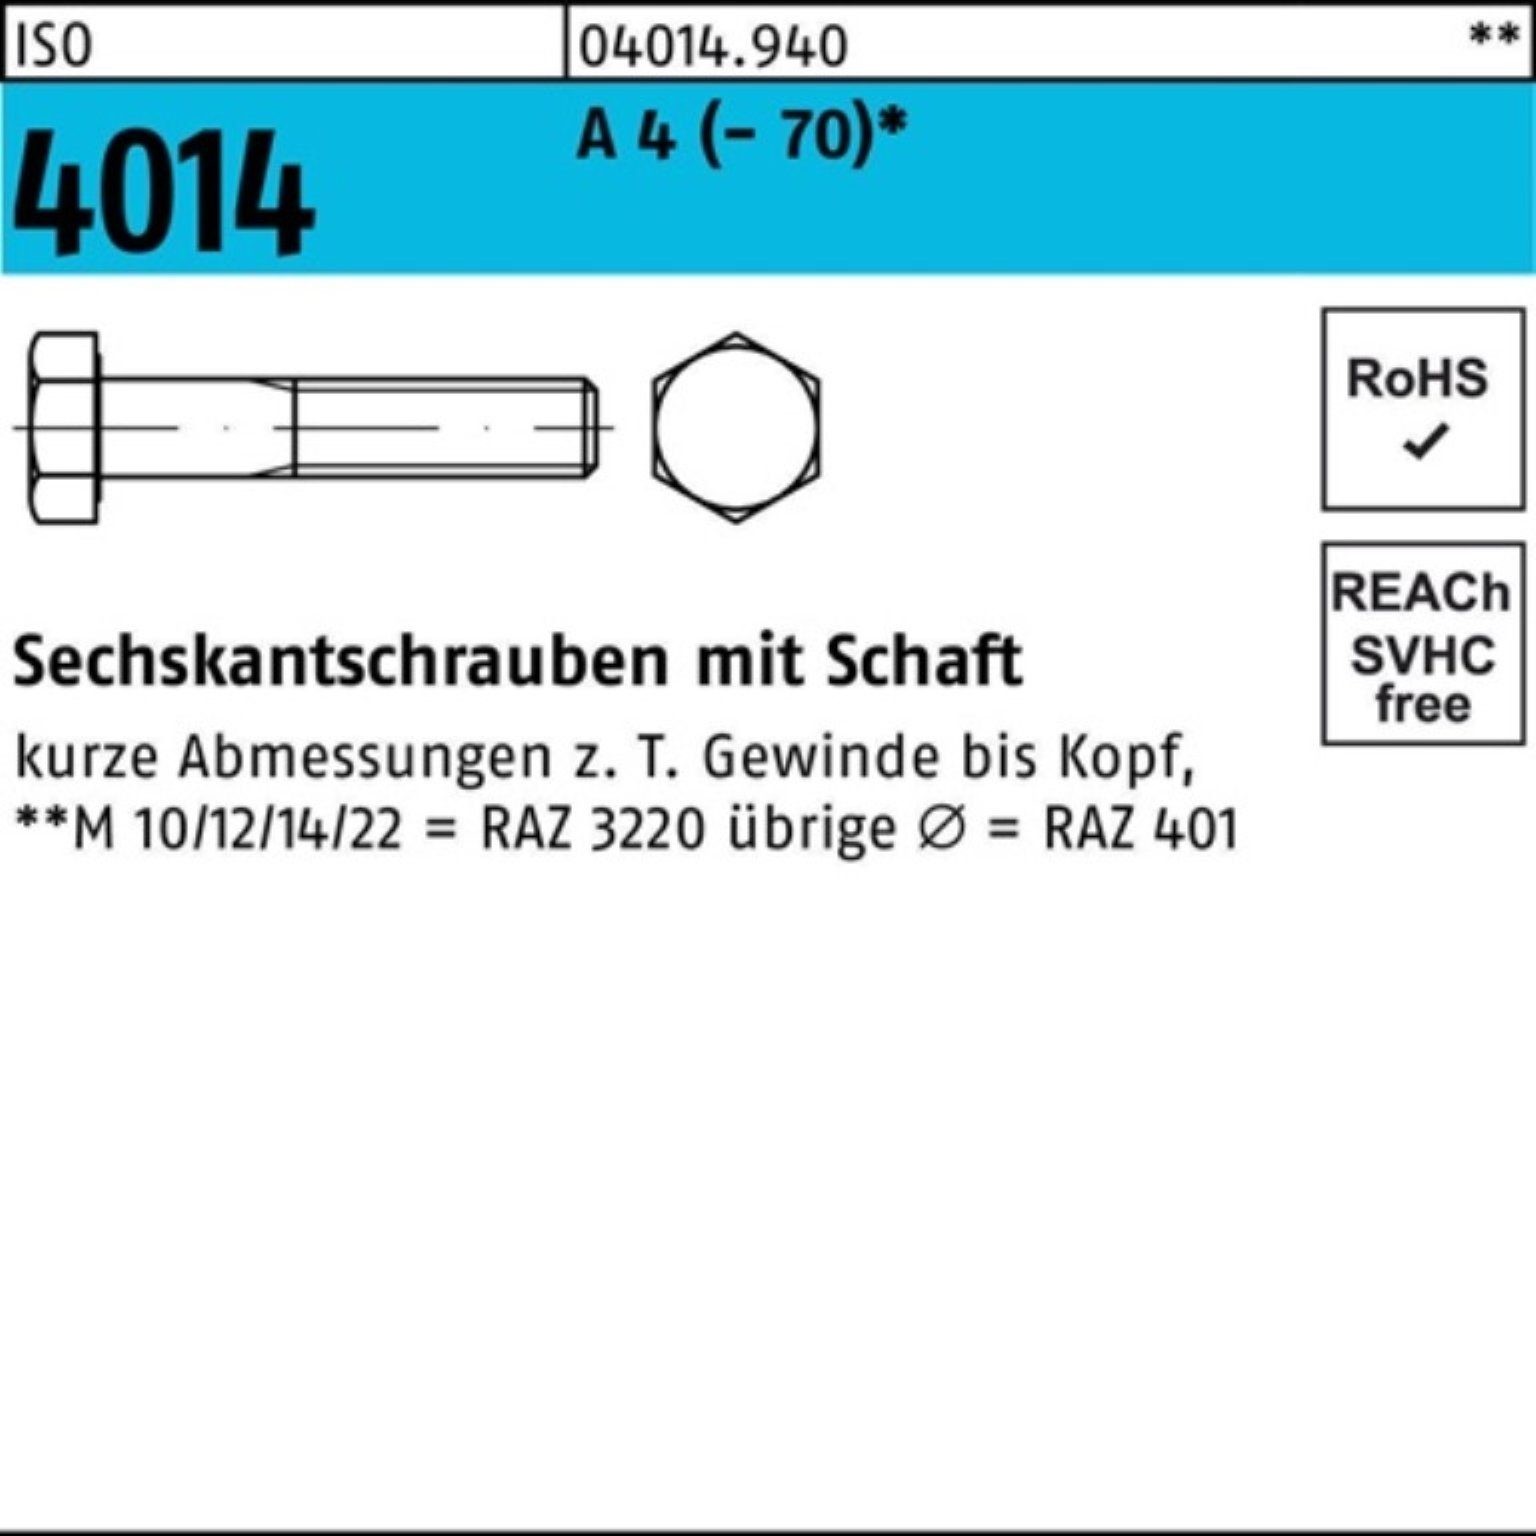 Bufab Sechskantschraube St Schaft 100 A 35 Pack 100er M8x 4014 Sechskantschraube (70) 4 ISO